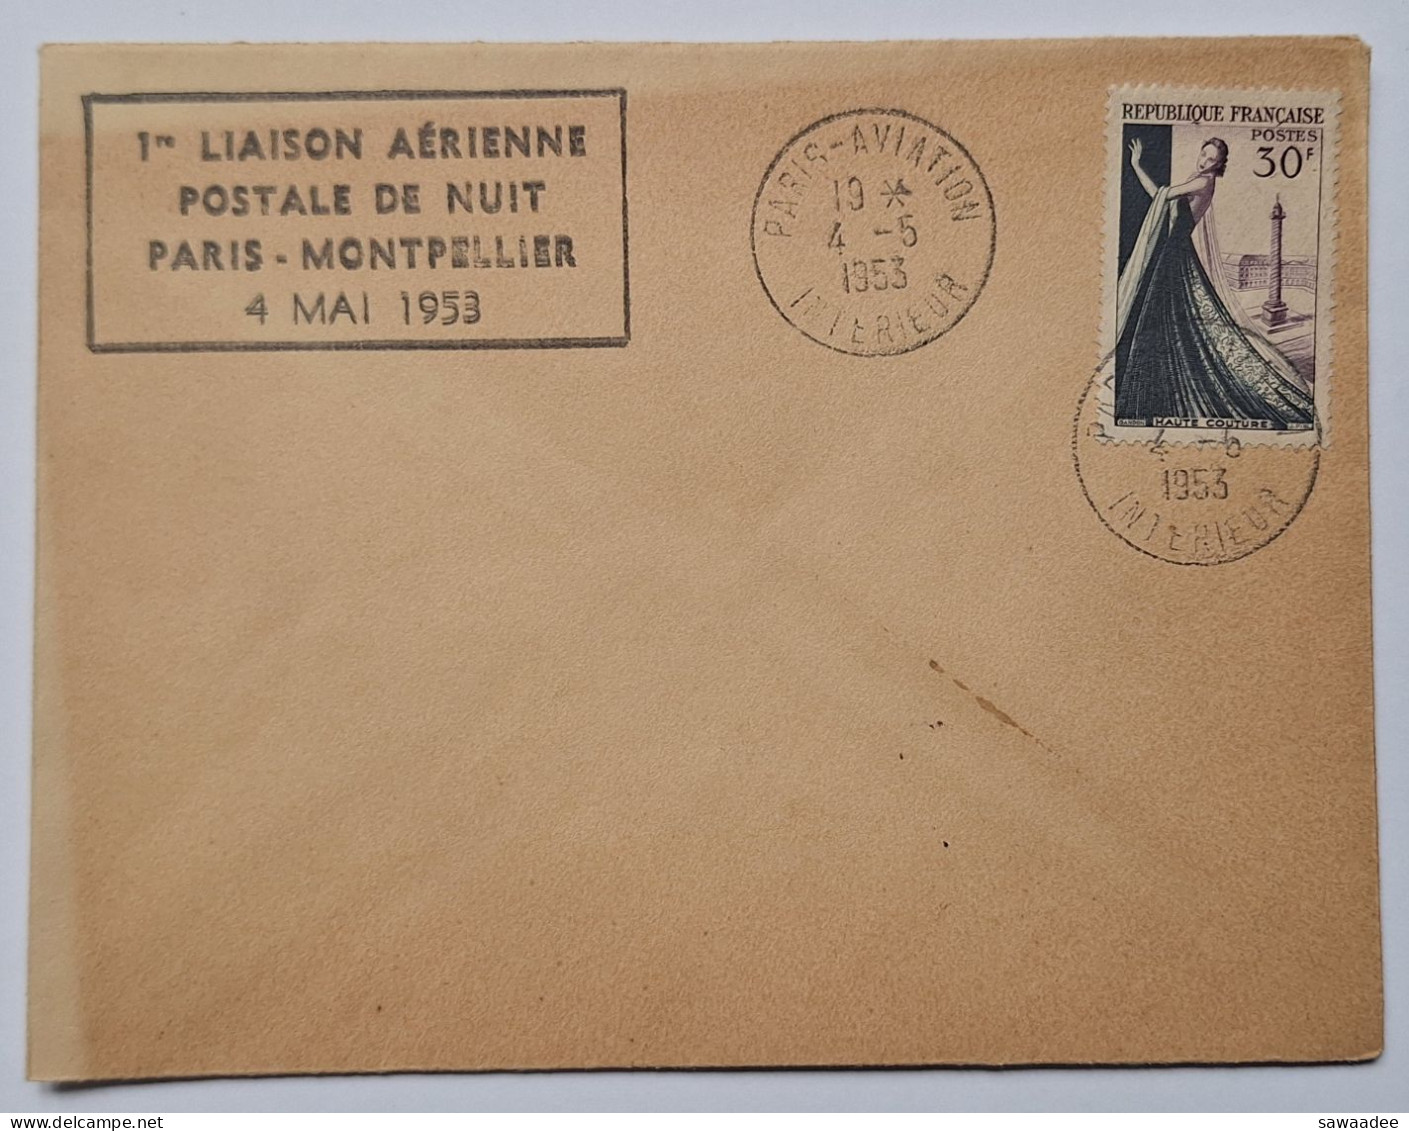 ENVELOPPE - FRANCE - 1er LIAISON AERIENNE POSTALE DE NUIT PARIS MONTPELLIER 4 MAI 1953 - 1921-1960: Moderne